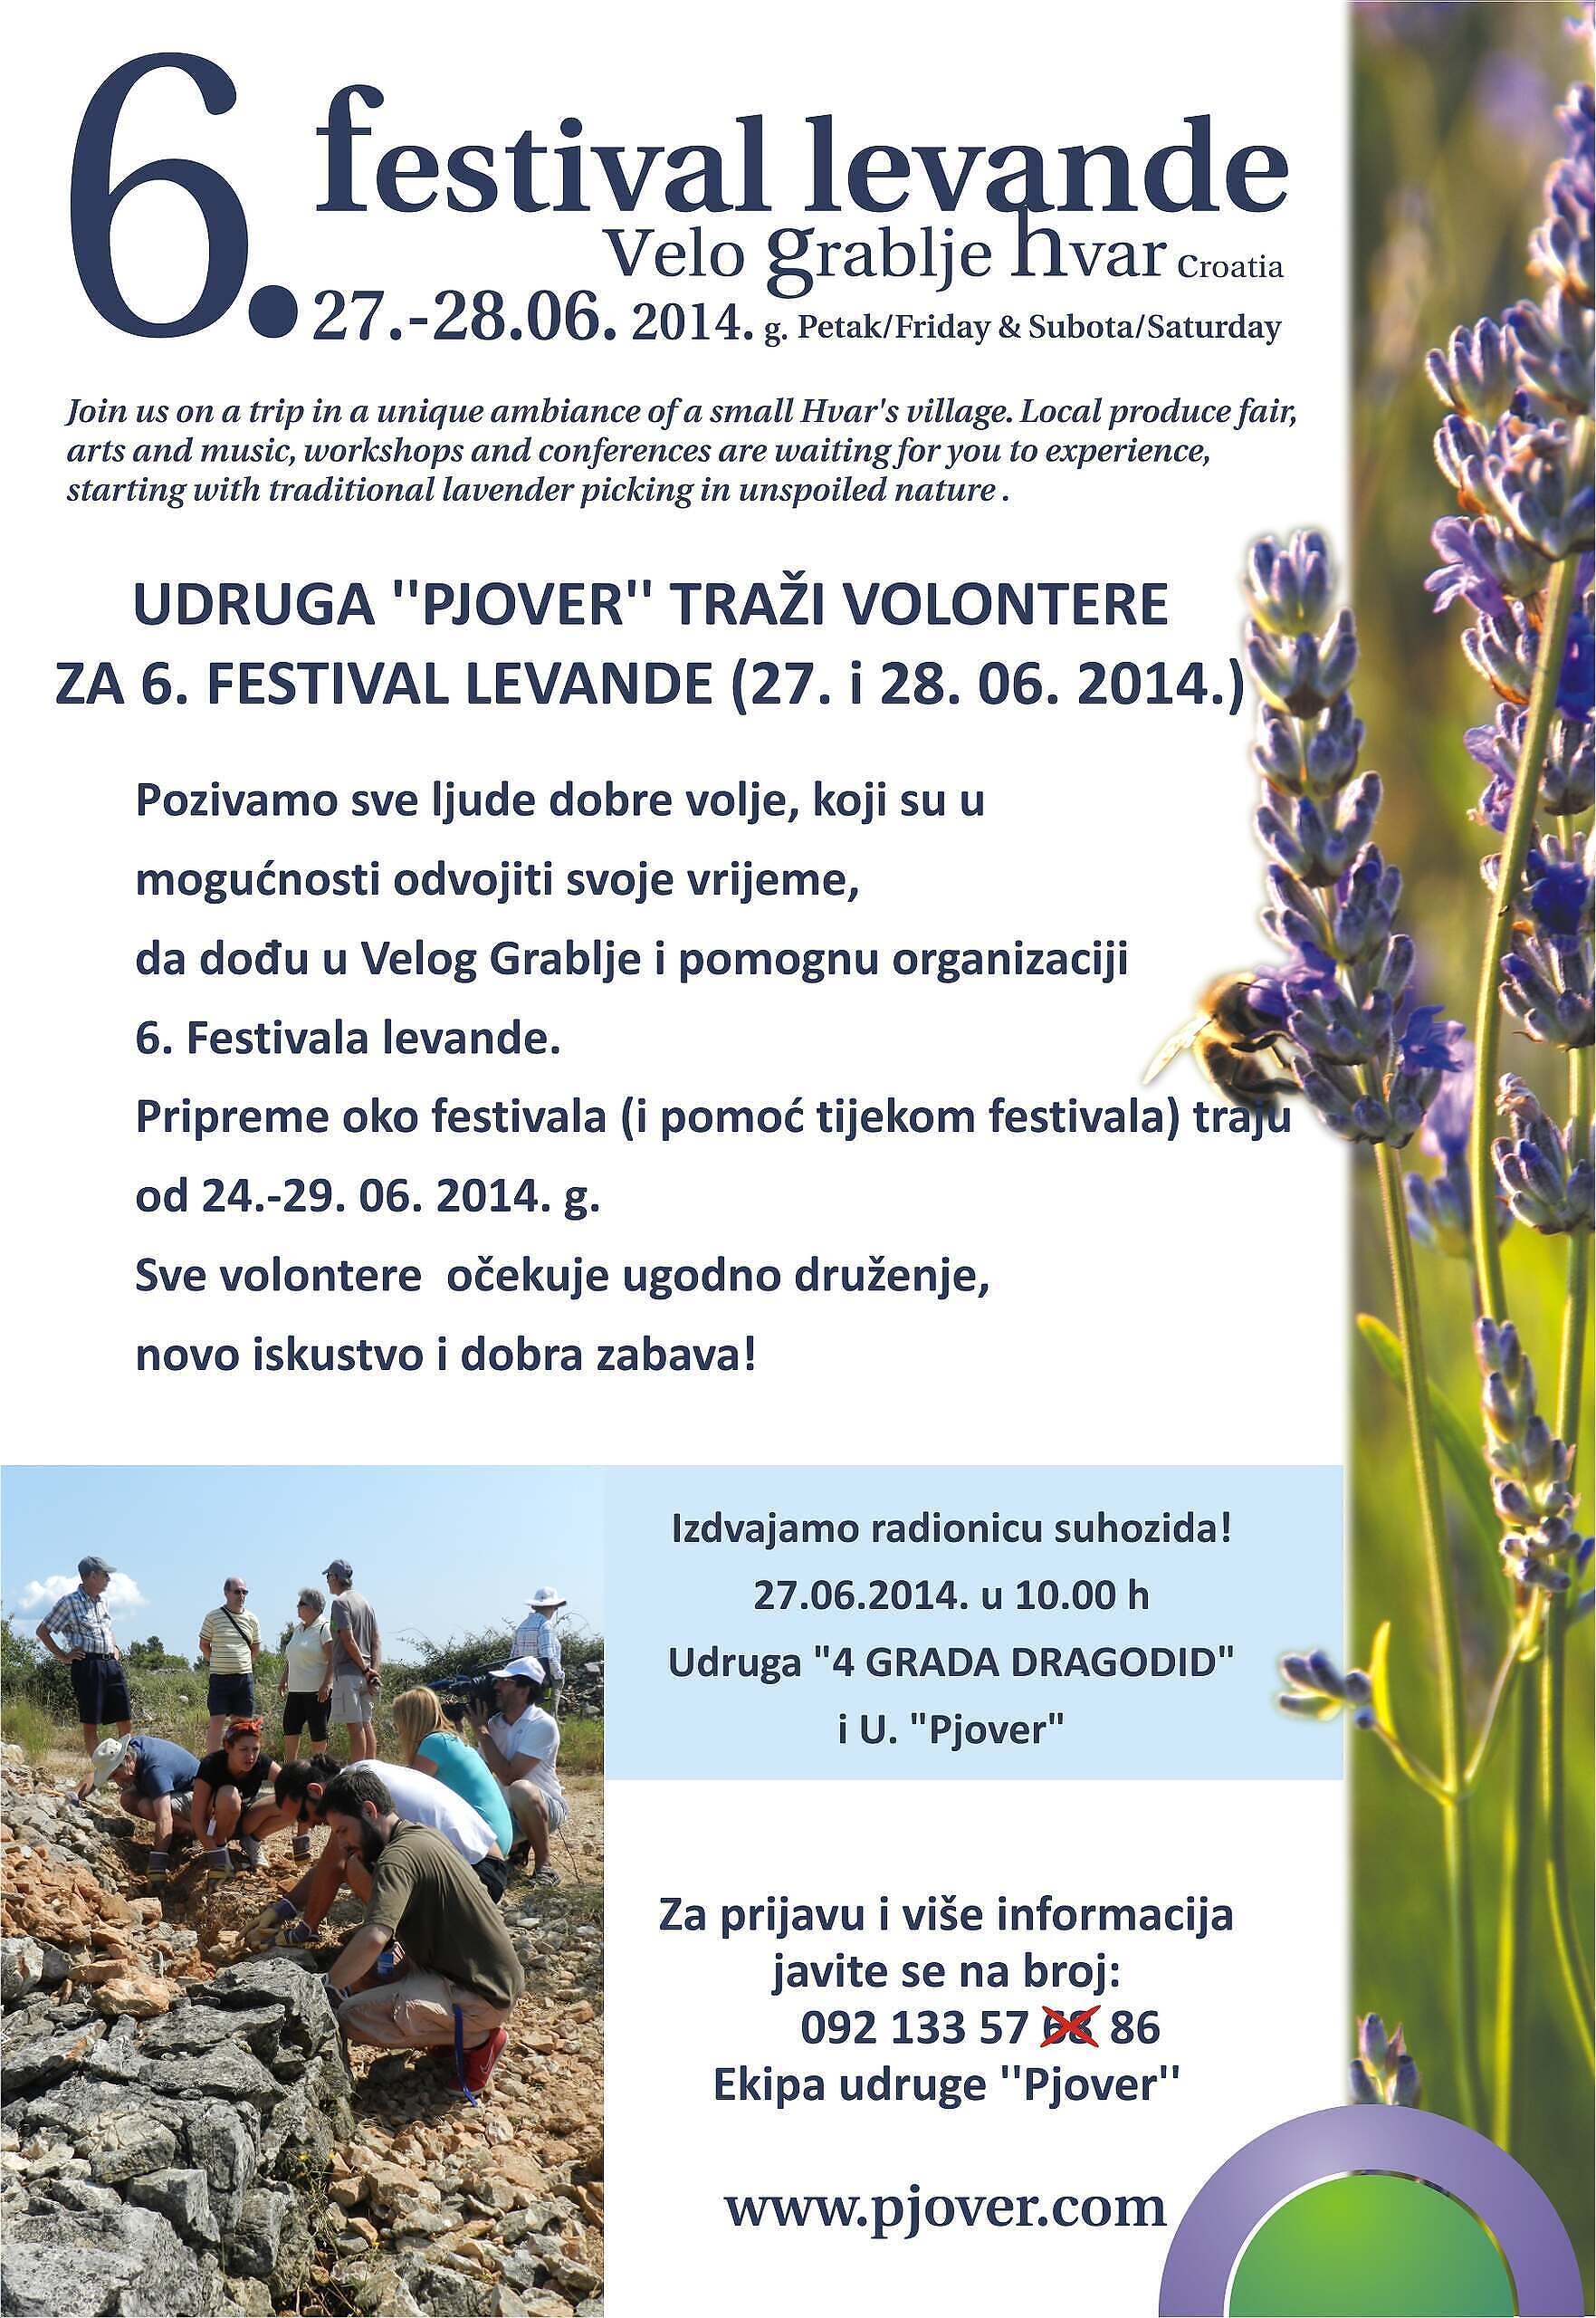 6. festival levande na Hvaru 2014: poziv volonterima i najava